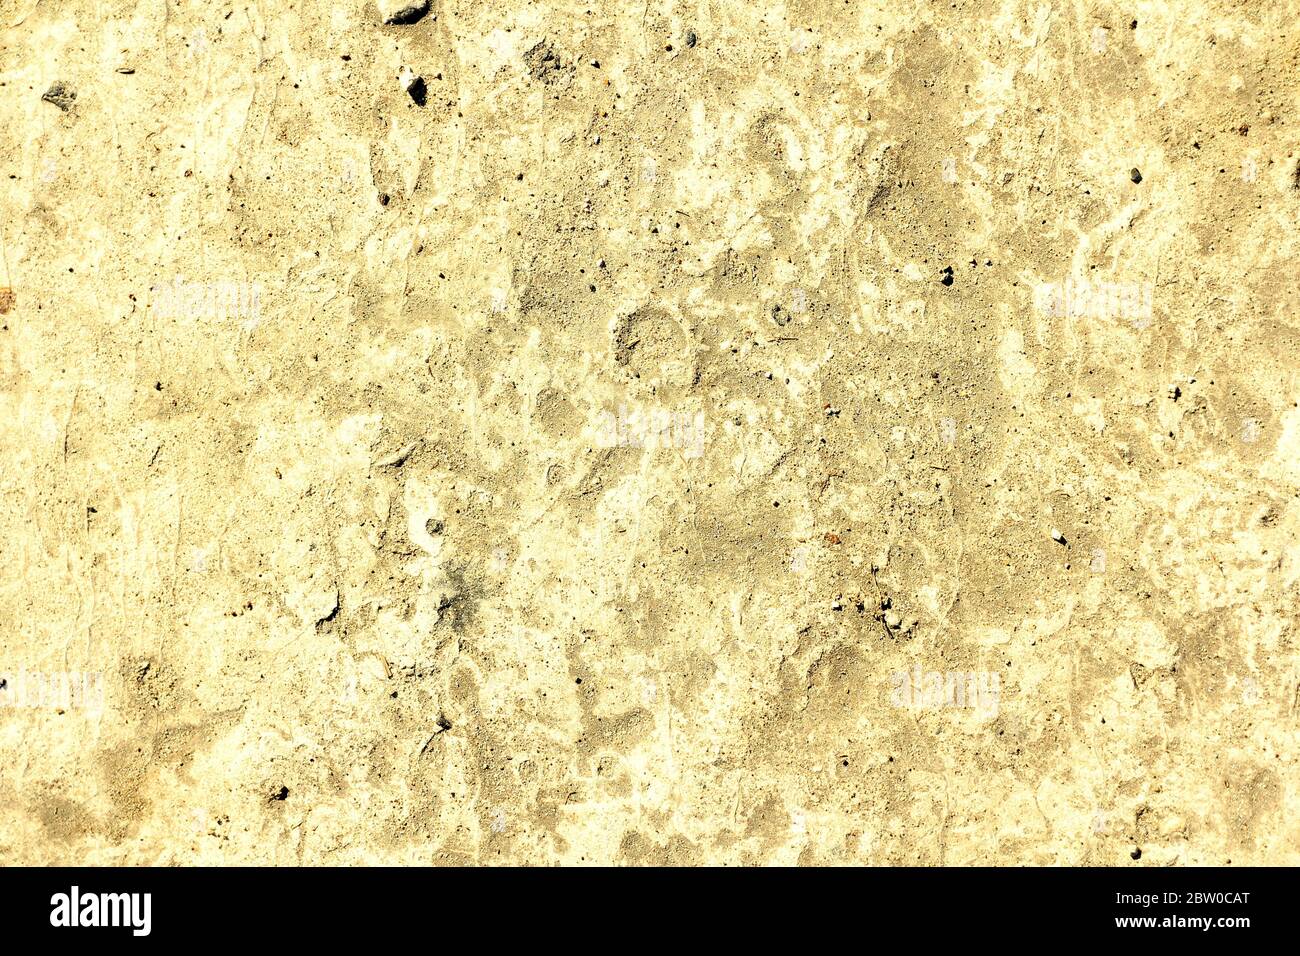 Die Textur des alten, geklumpten Betons. Die Oberfläche des Kalksteins. Platz für Text, Hintergrund für Design. Stockfoto